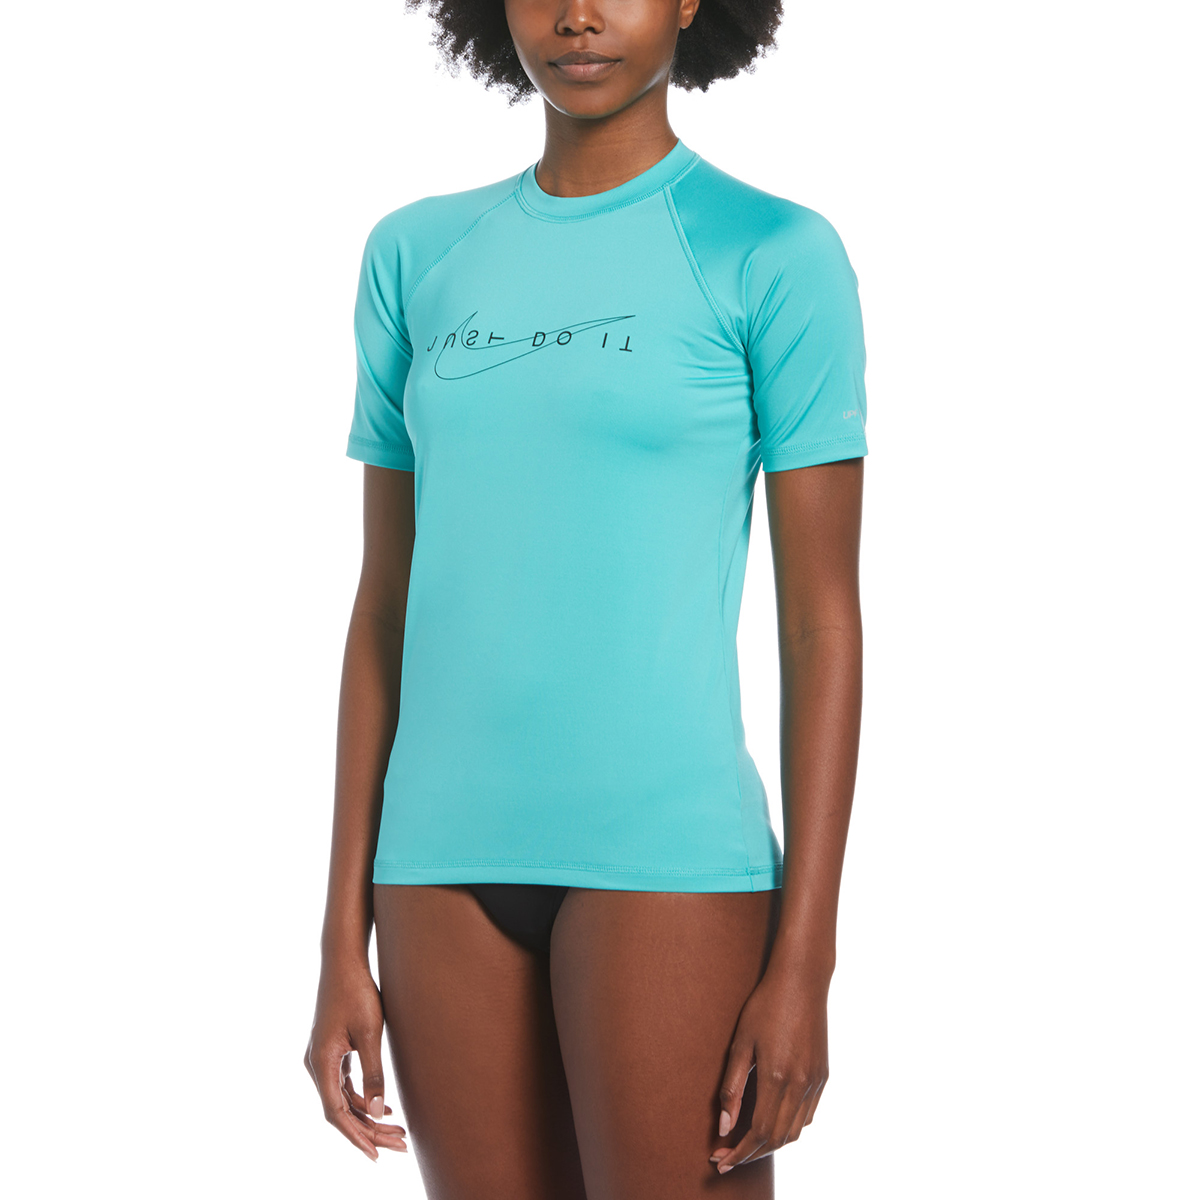 Nike Women's Short-Sleeve Hydroguard Shirt